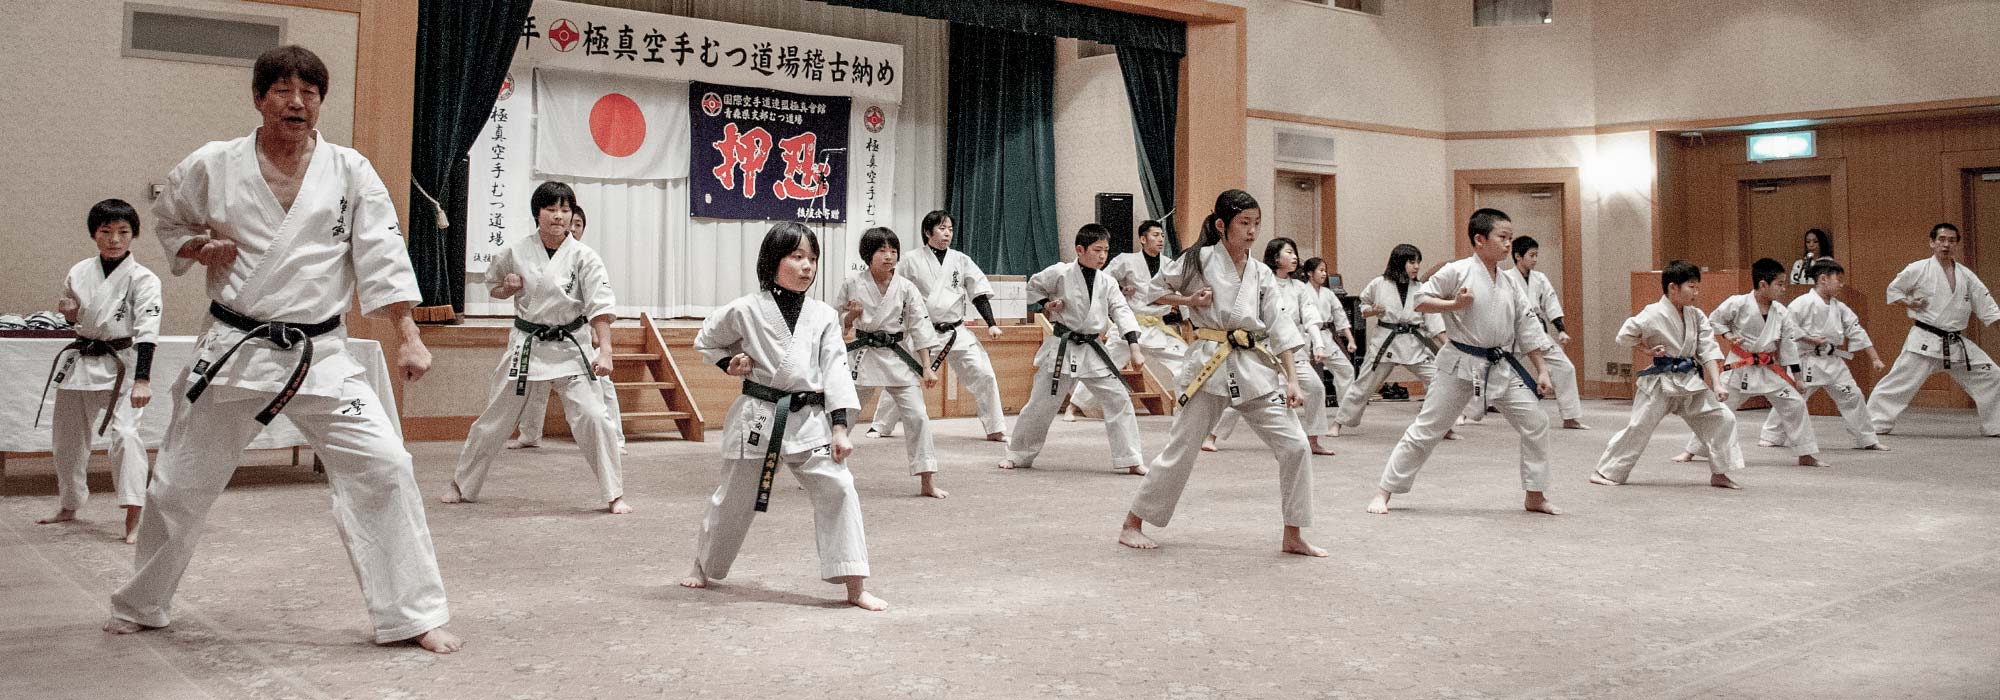 kyokushin-mutsu-2.jpg